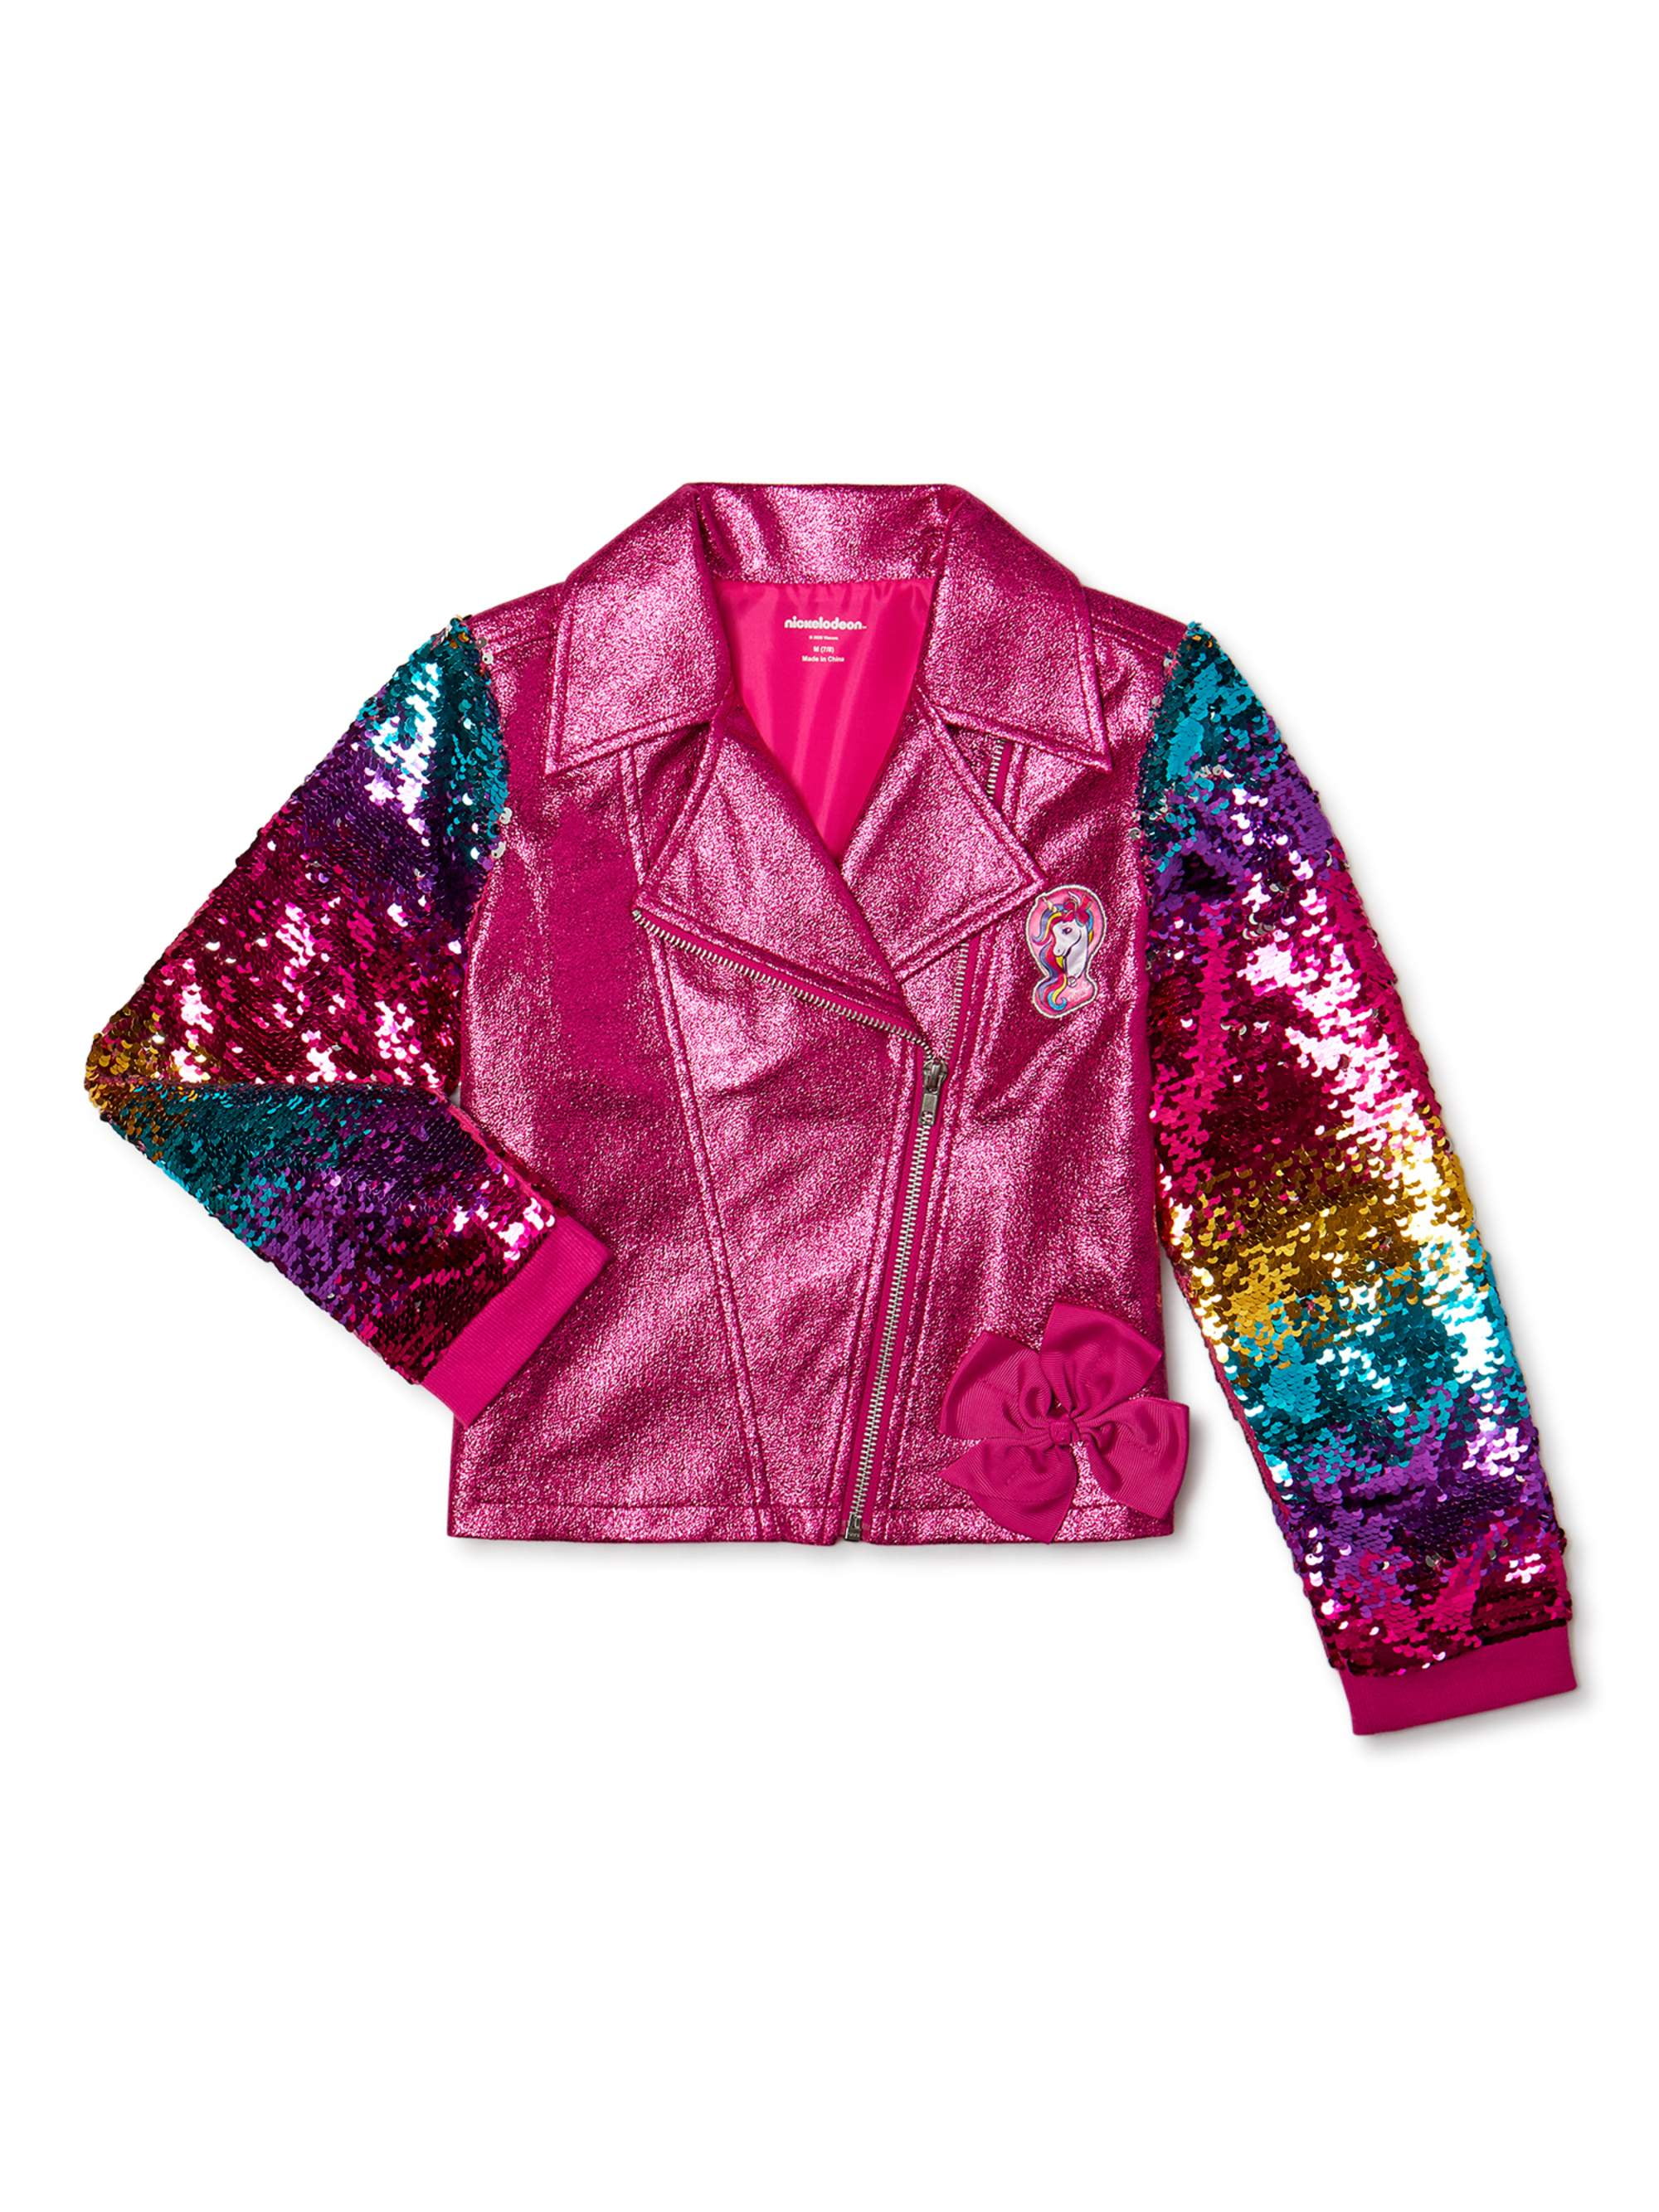 14/16 Jojos Closet Girls JoJo Siwa Sequin Jacket XL